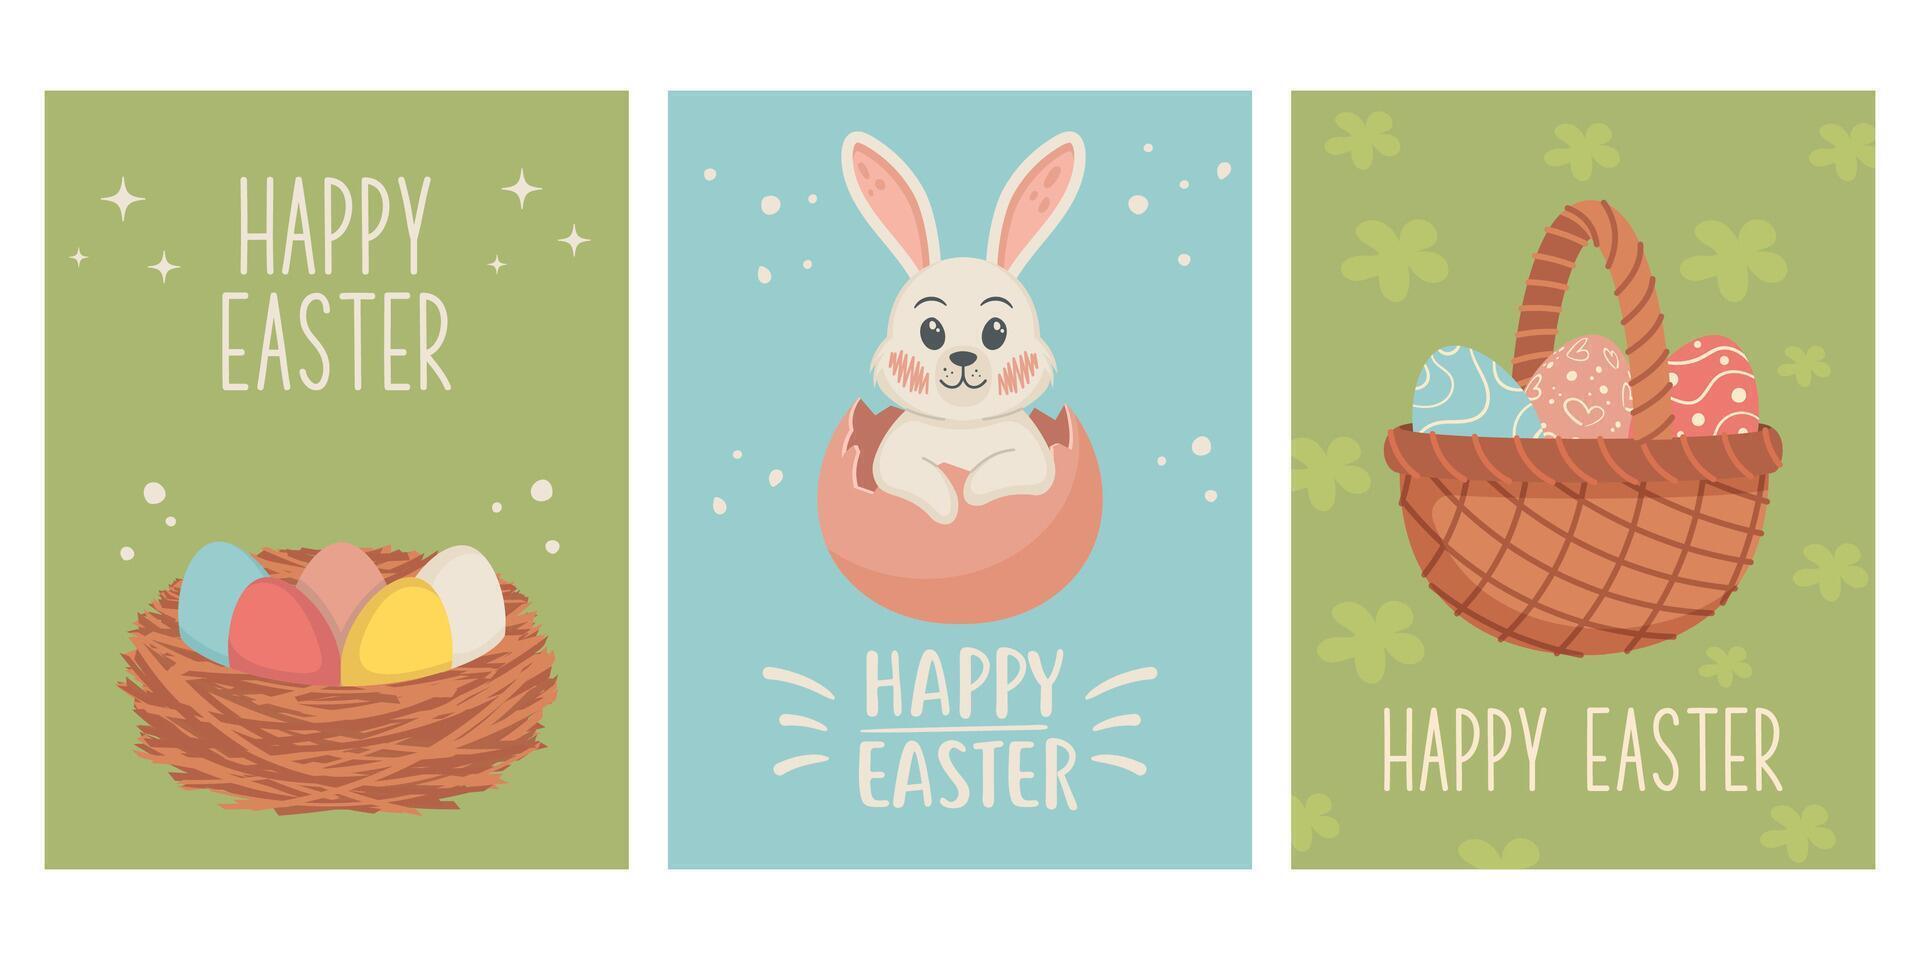 linda conjunto de Pascua de Resurrección tarjetas primavera colección de animales, flores y decoraciones para póster, tarjeta, álbum de recortes, pegatinas vector